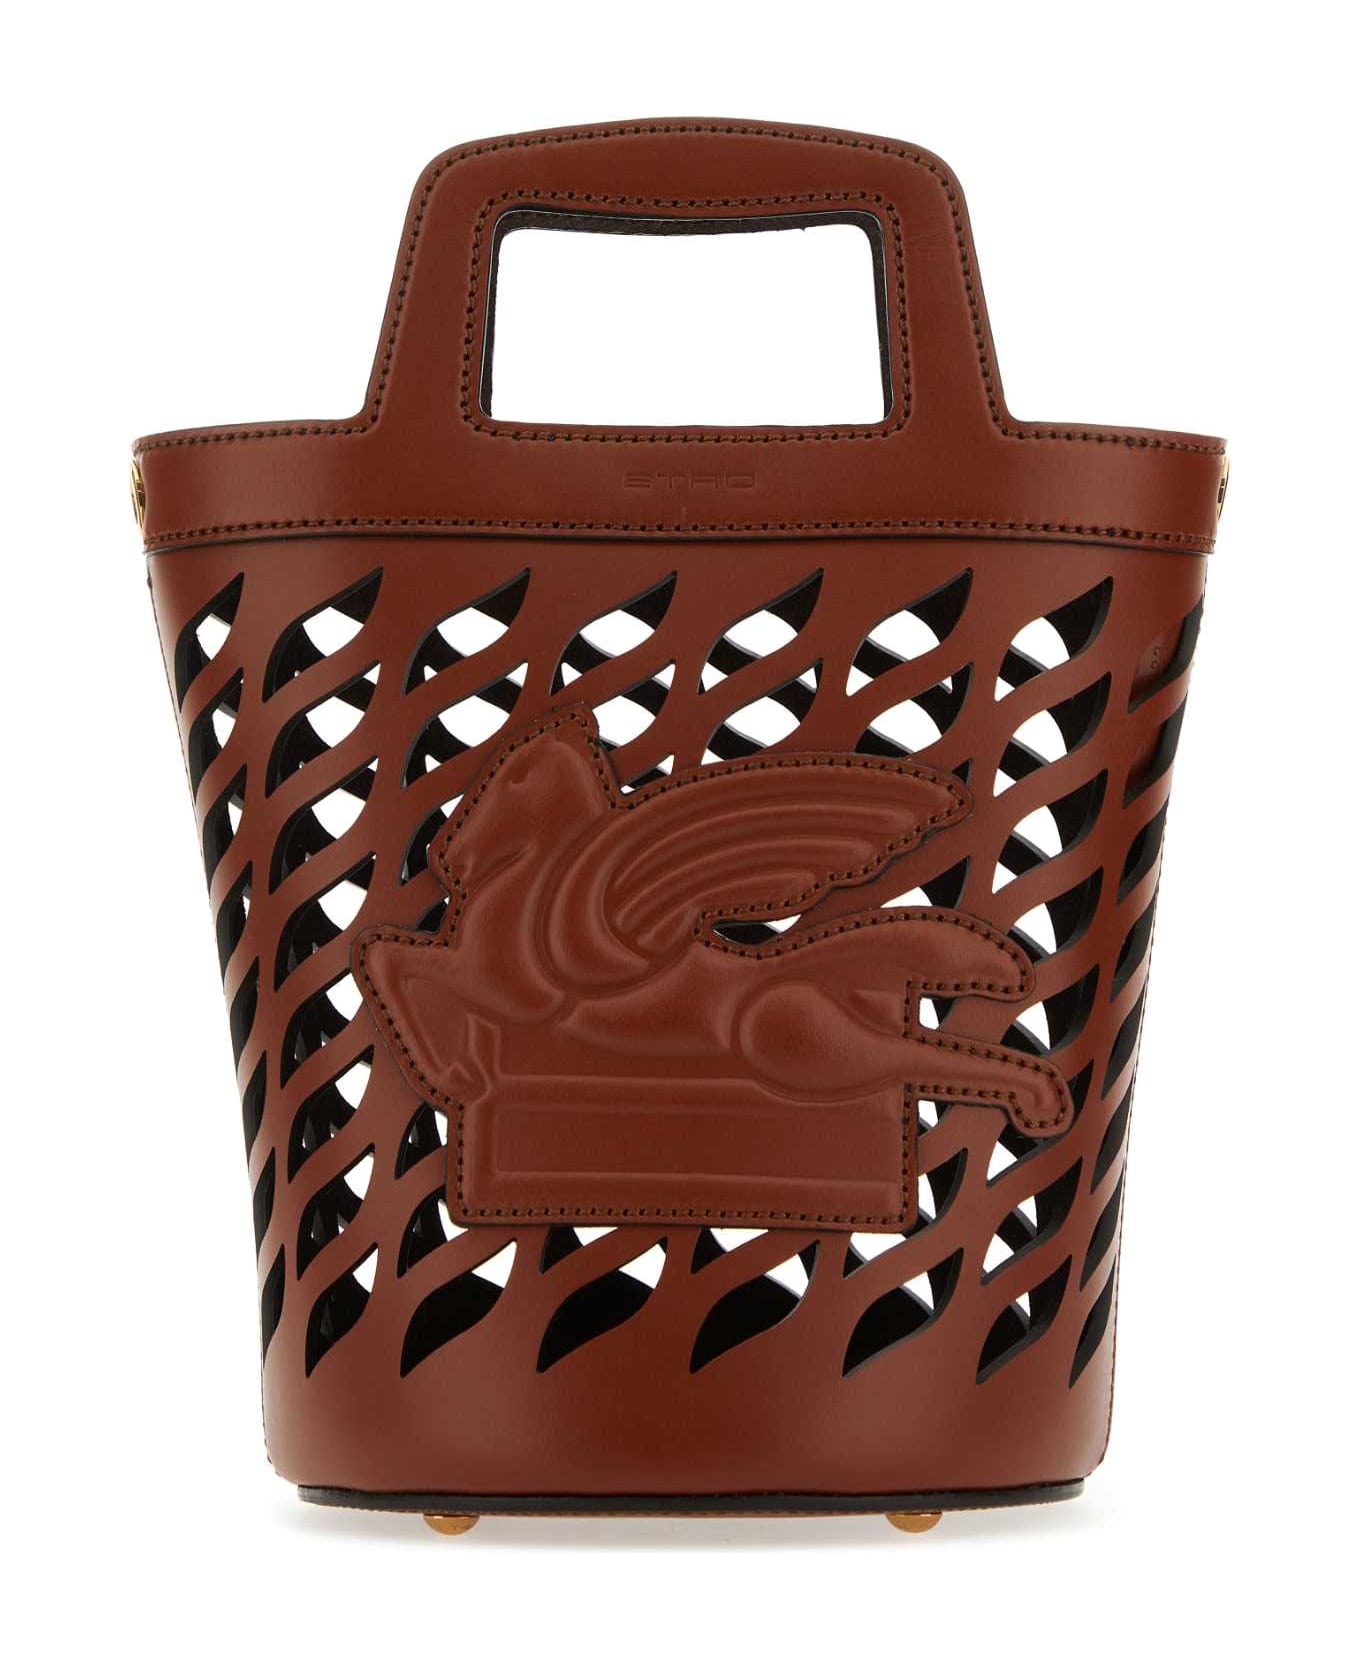 Etro Caramel Leather Bucket Bag - M0022